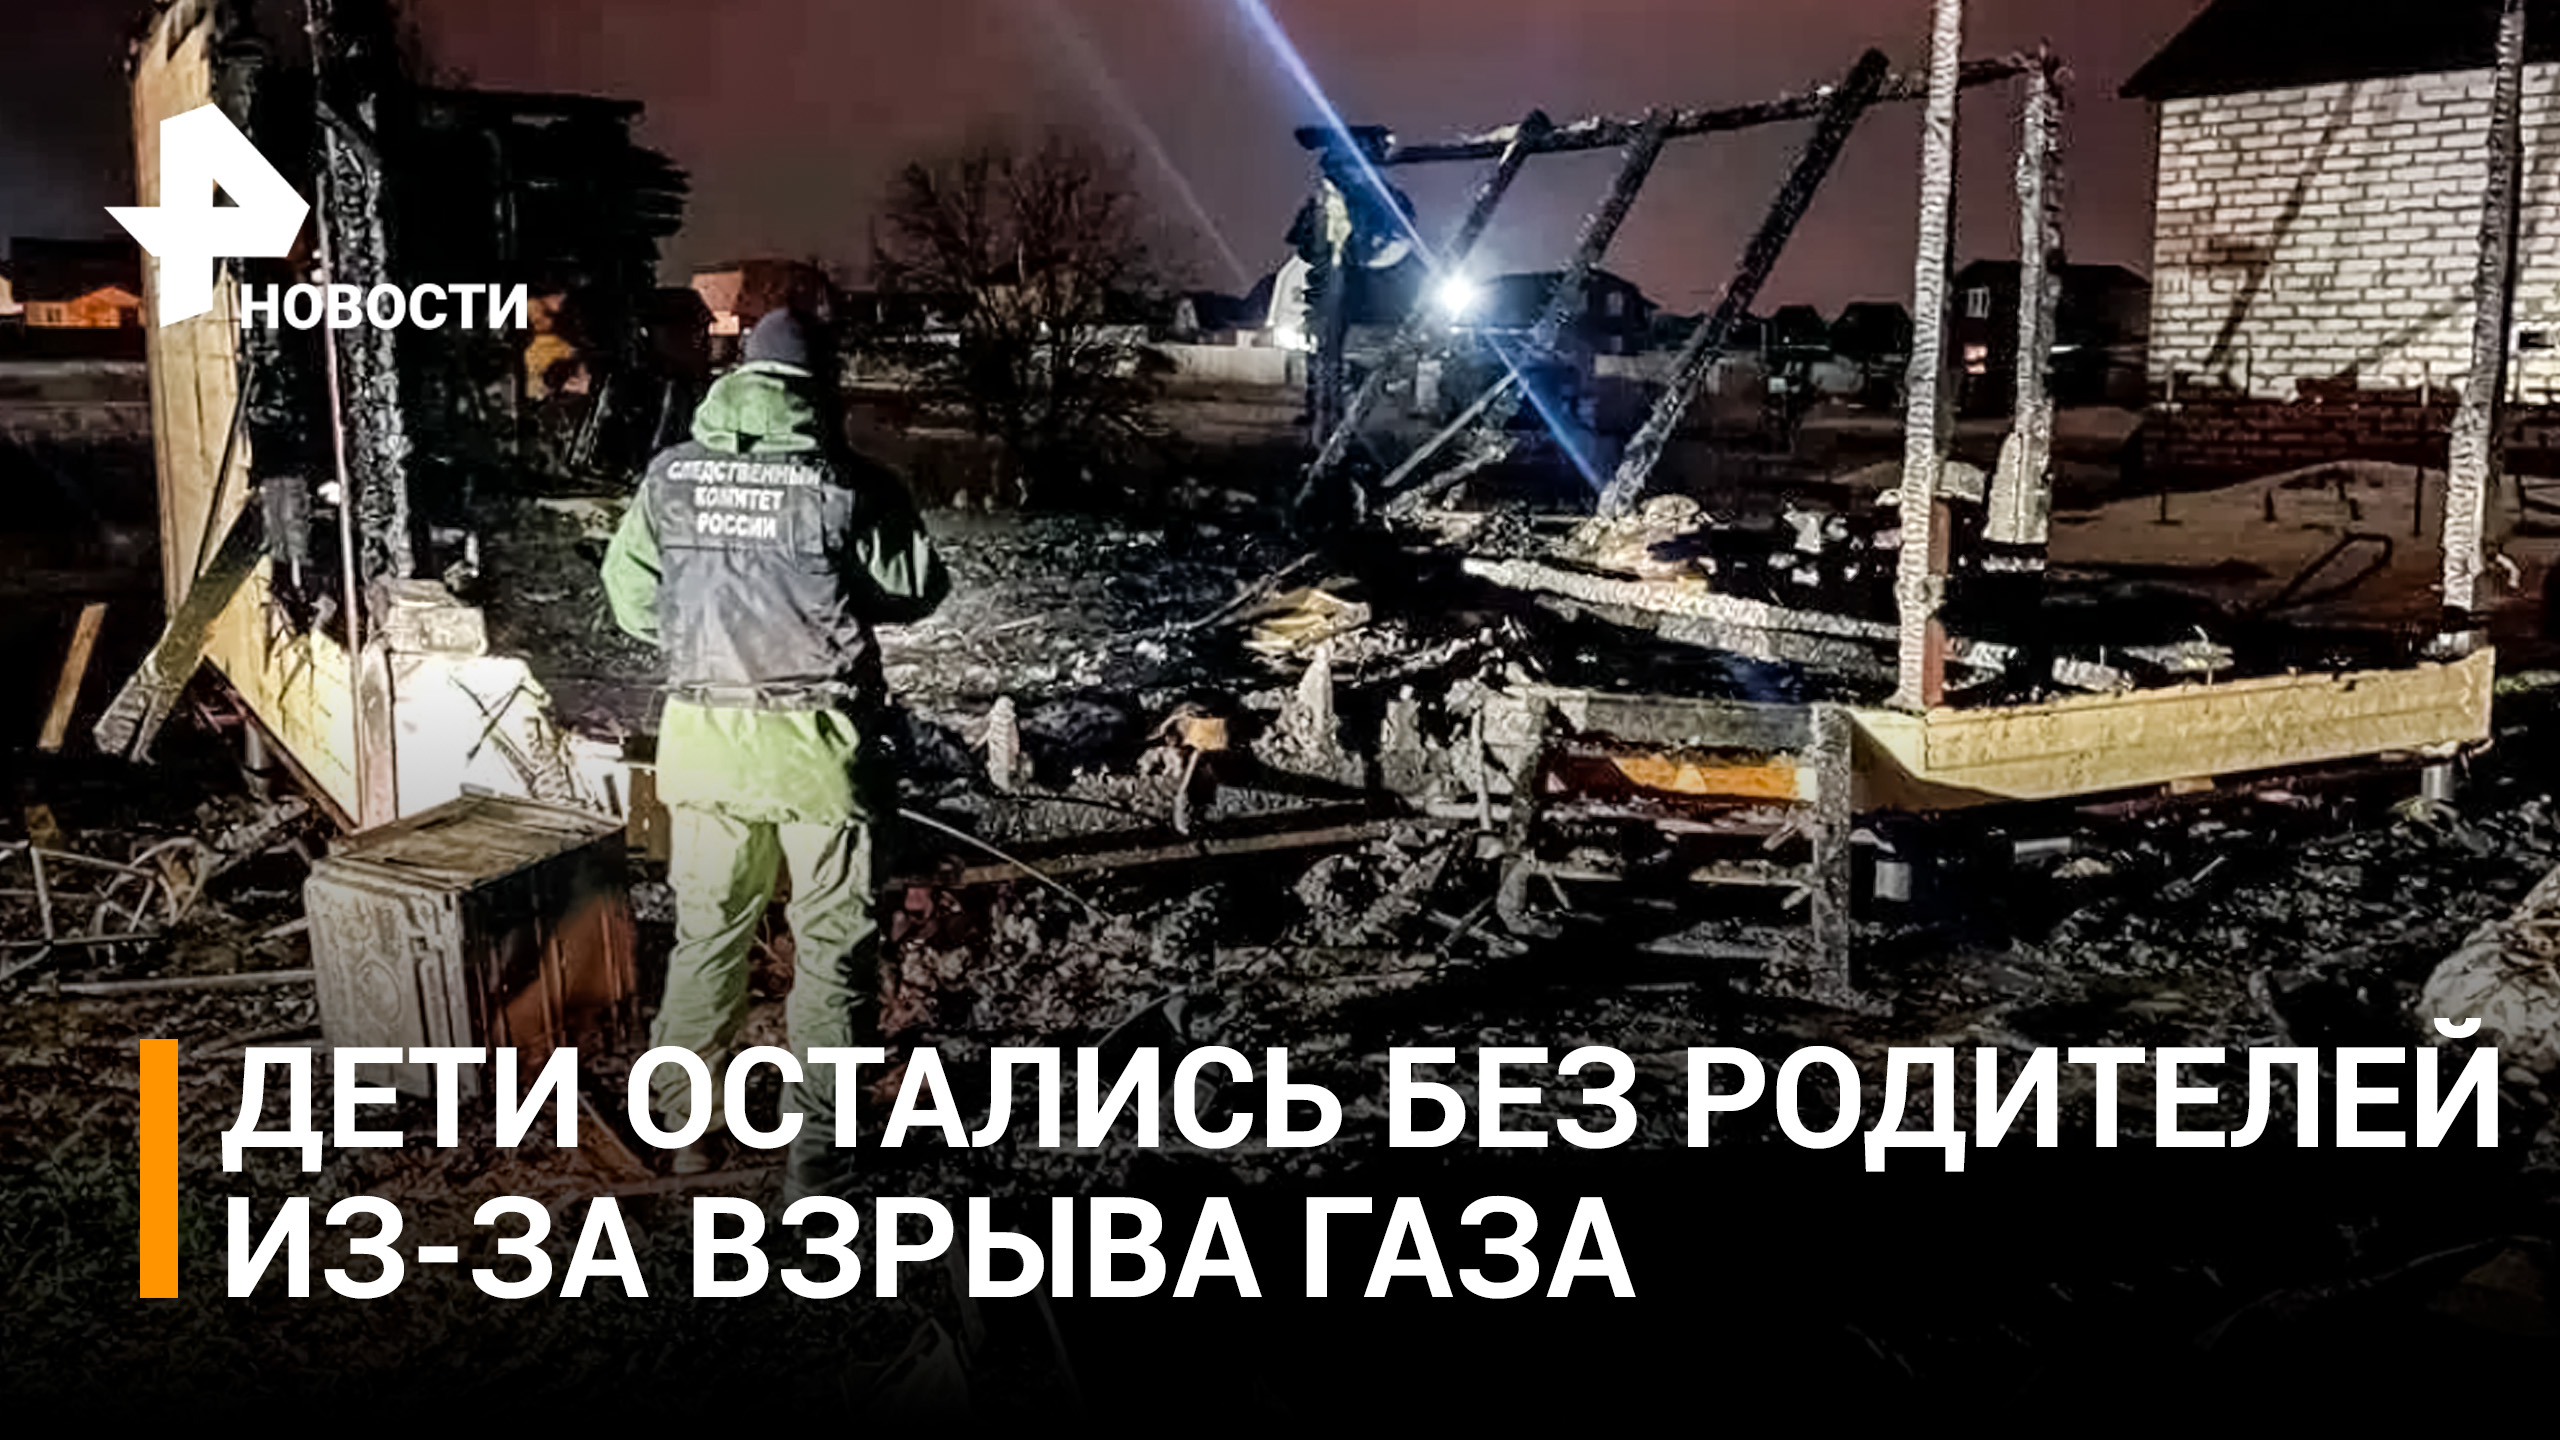 Двое детей остались сиротами после взрыва газа в доме в Домодедове / РЕН Новости